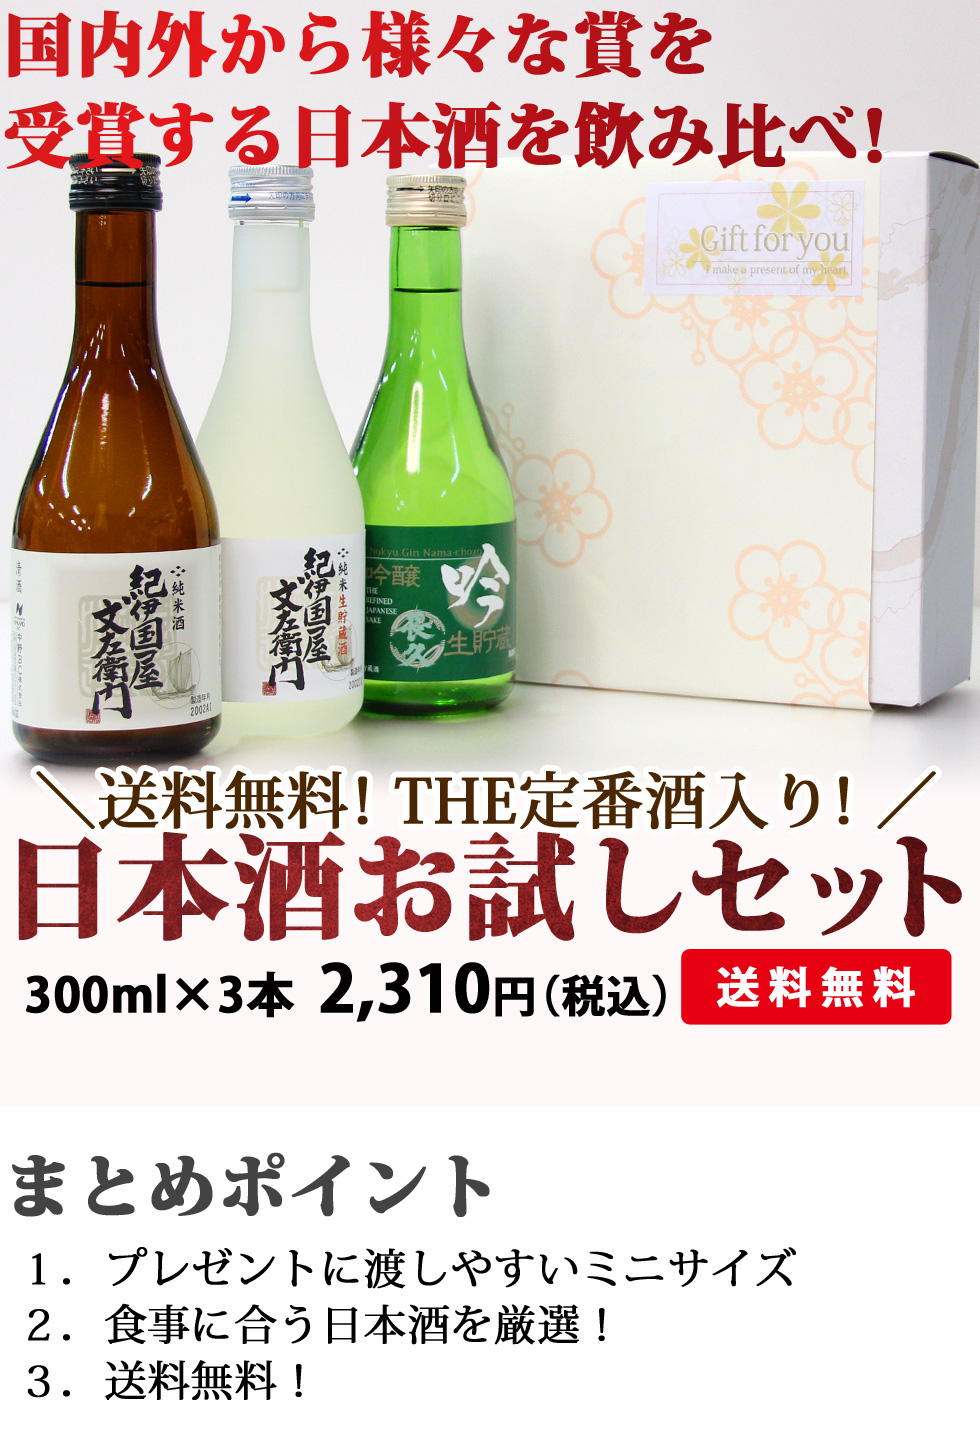 【送料無料】日本酒300ml×3本飲み比べセットB